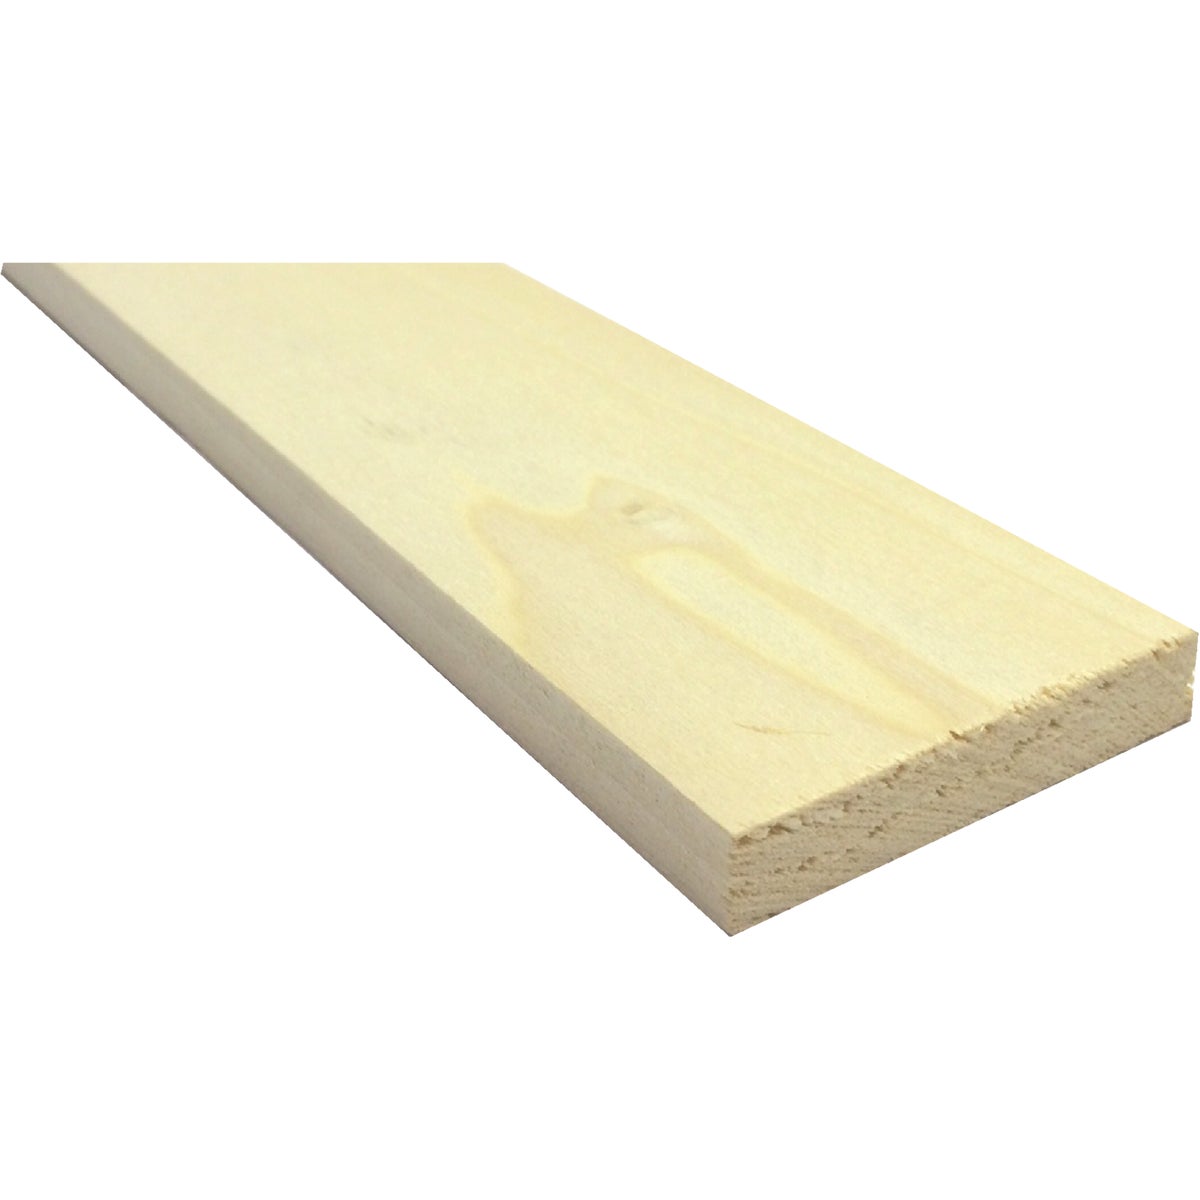 Waddell 1/2 In. x 4 In. x 4 Ft. Poplar Wood Board